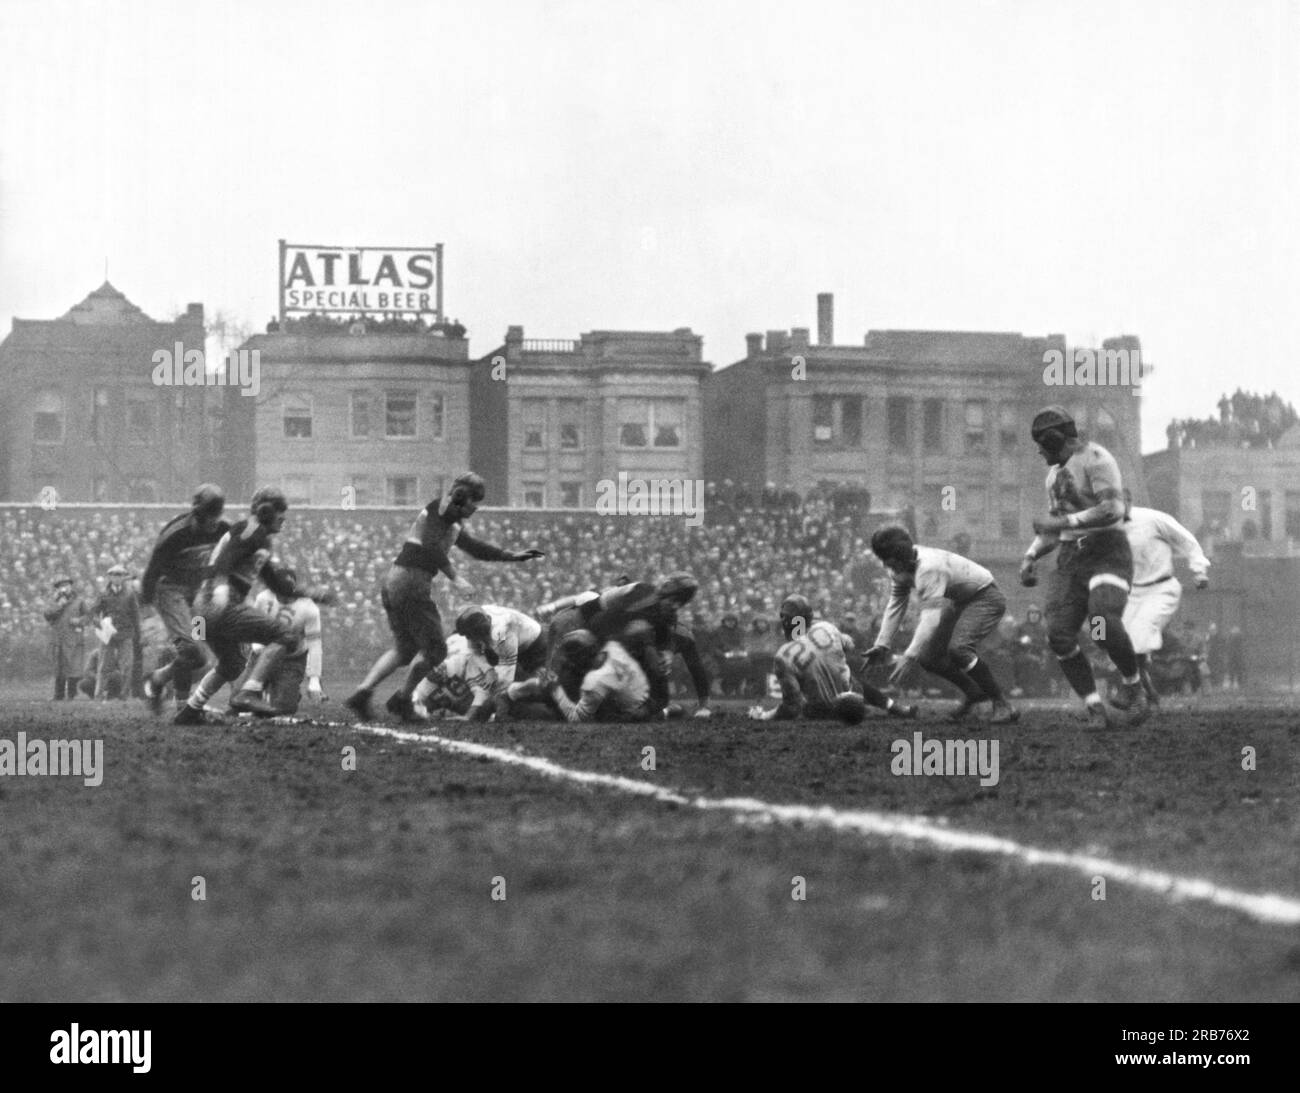 Chicago, Illinois: 17. Dezember 1933 die Chicago Bears erobern die Fumble ihres Quarterbacks und gewinnen das erste geplante NFL Football Championship-Spiel über die New York Giants im Wrigley Field in Chicago mit einem Ergebnis von 23:21. Stockfoto